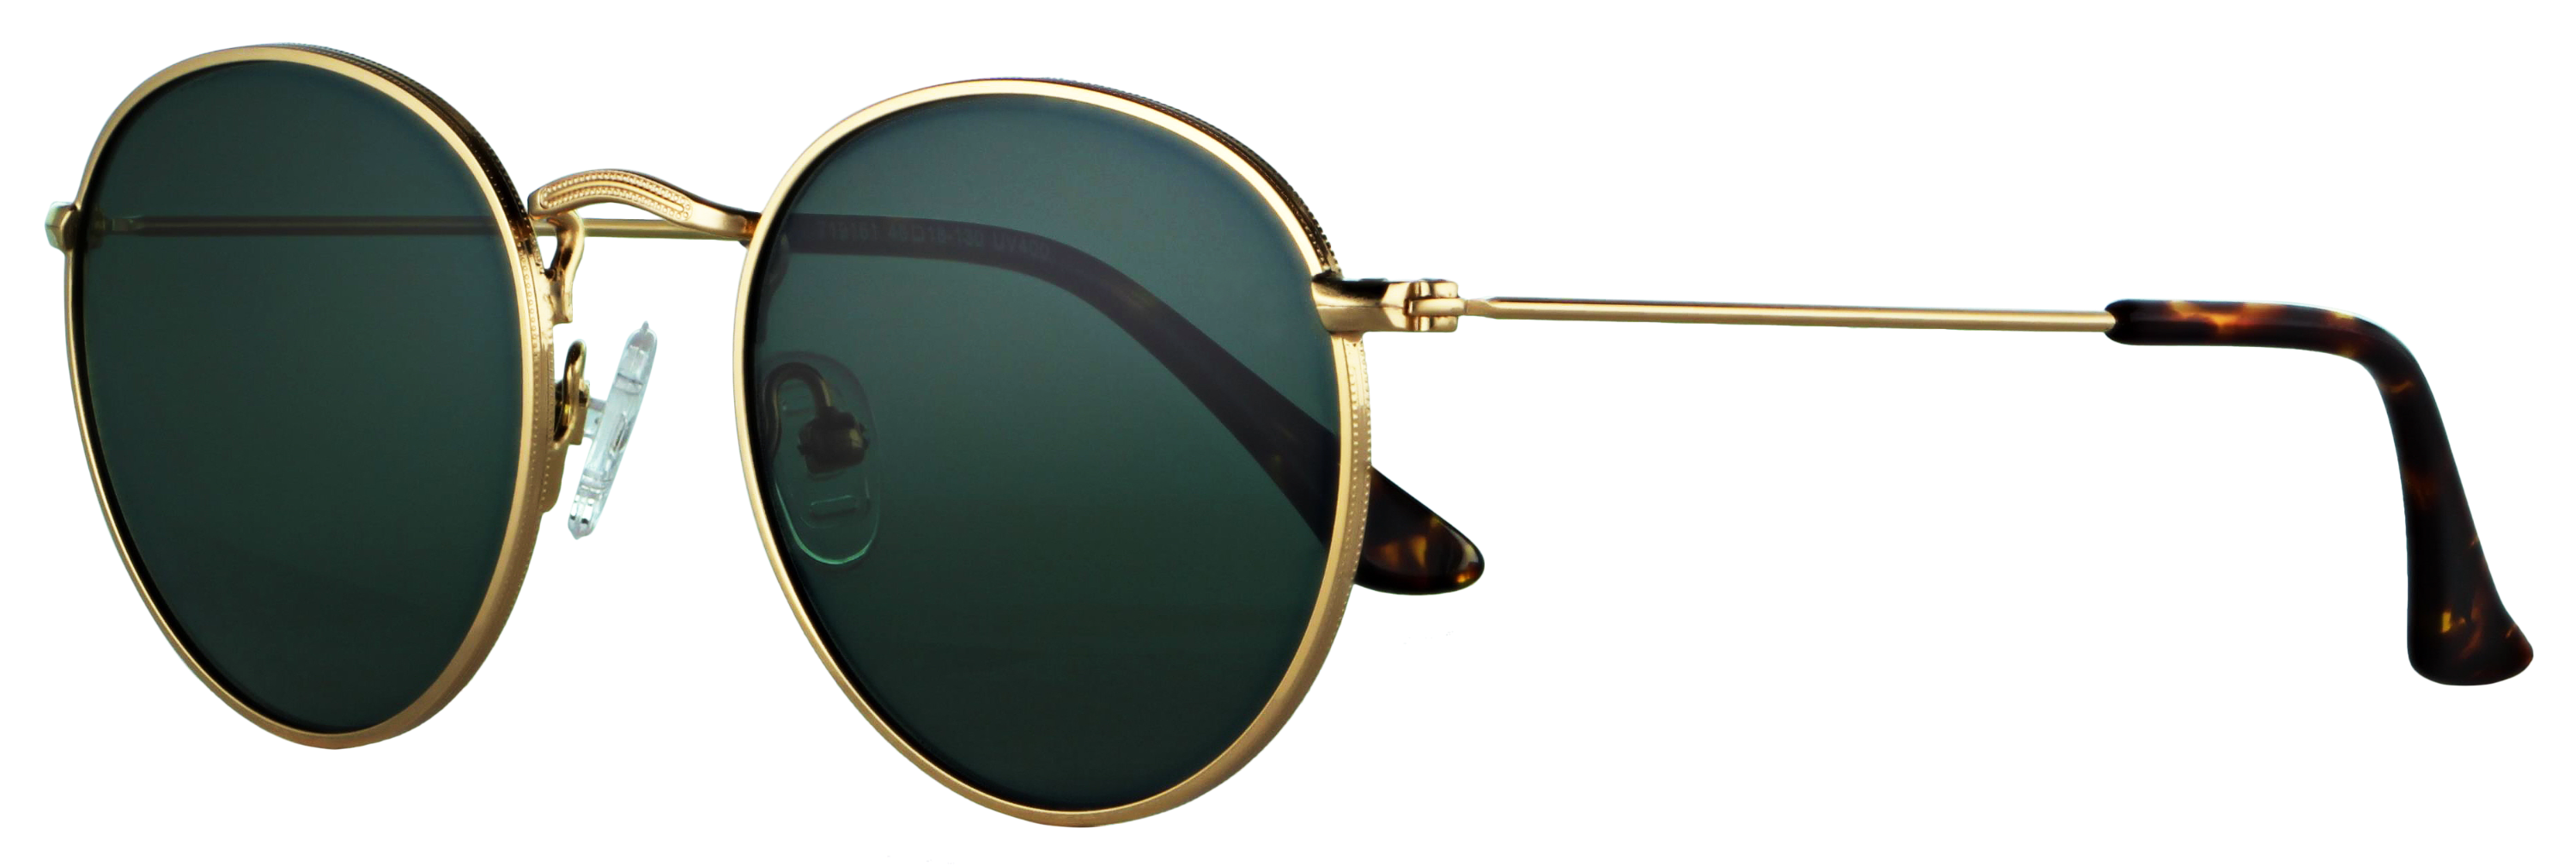 Das Bild zeigt die Sonnenbrille 719161 von der Marke Abele Optik in gold.